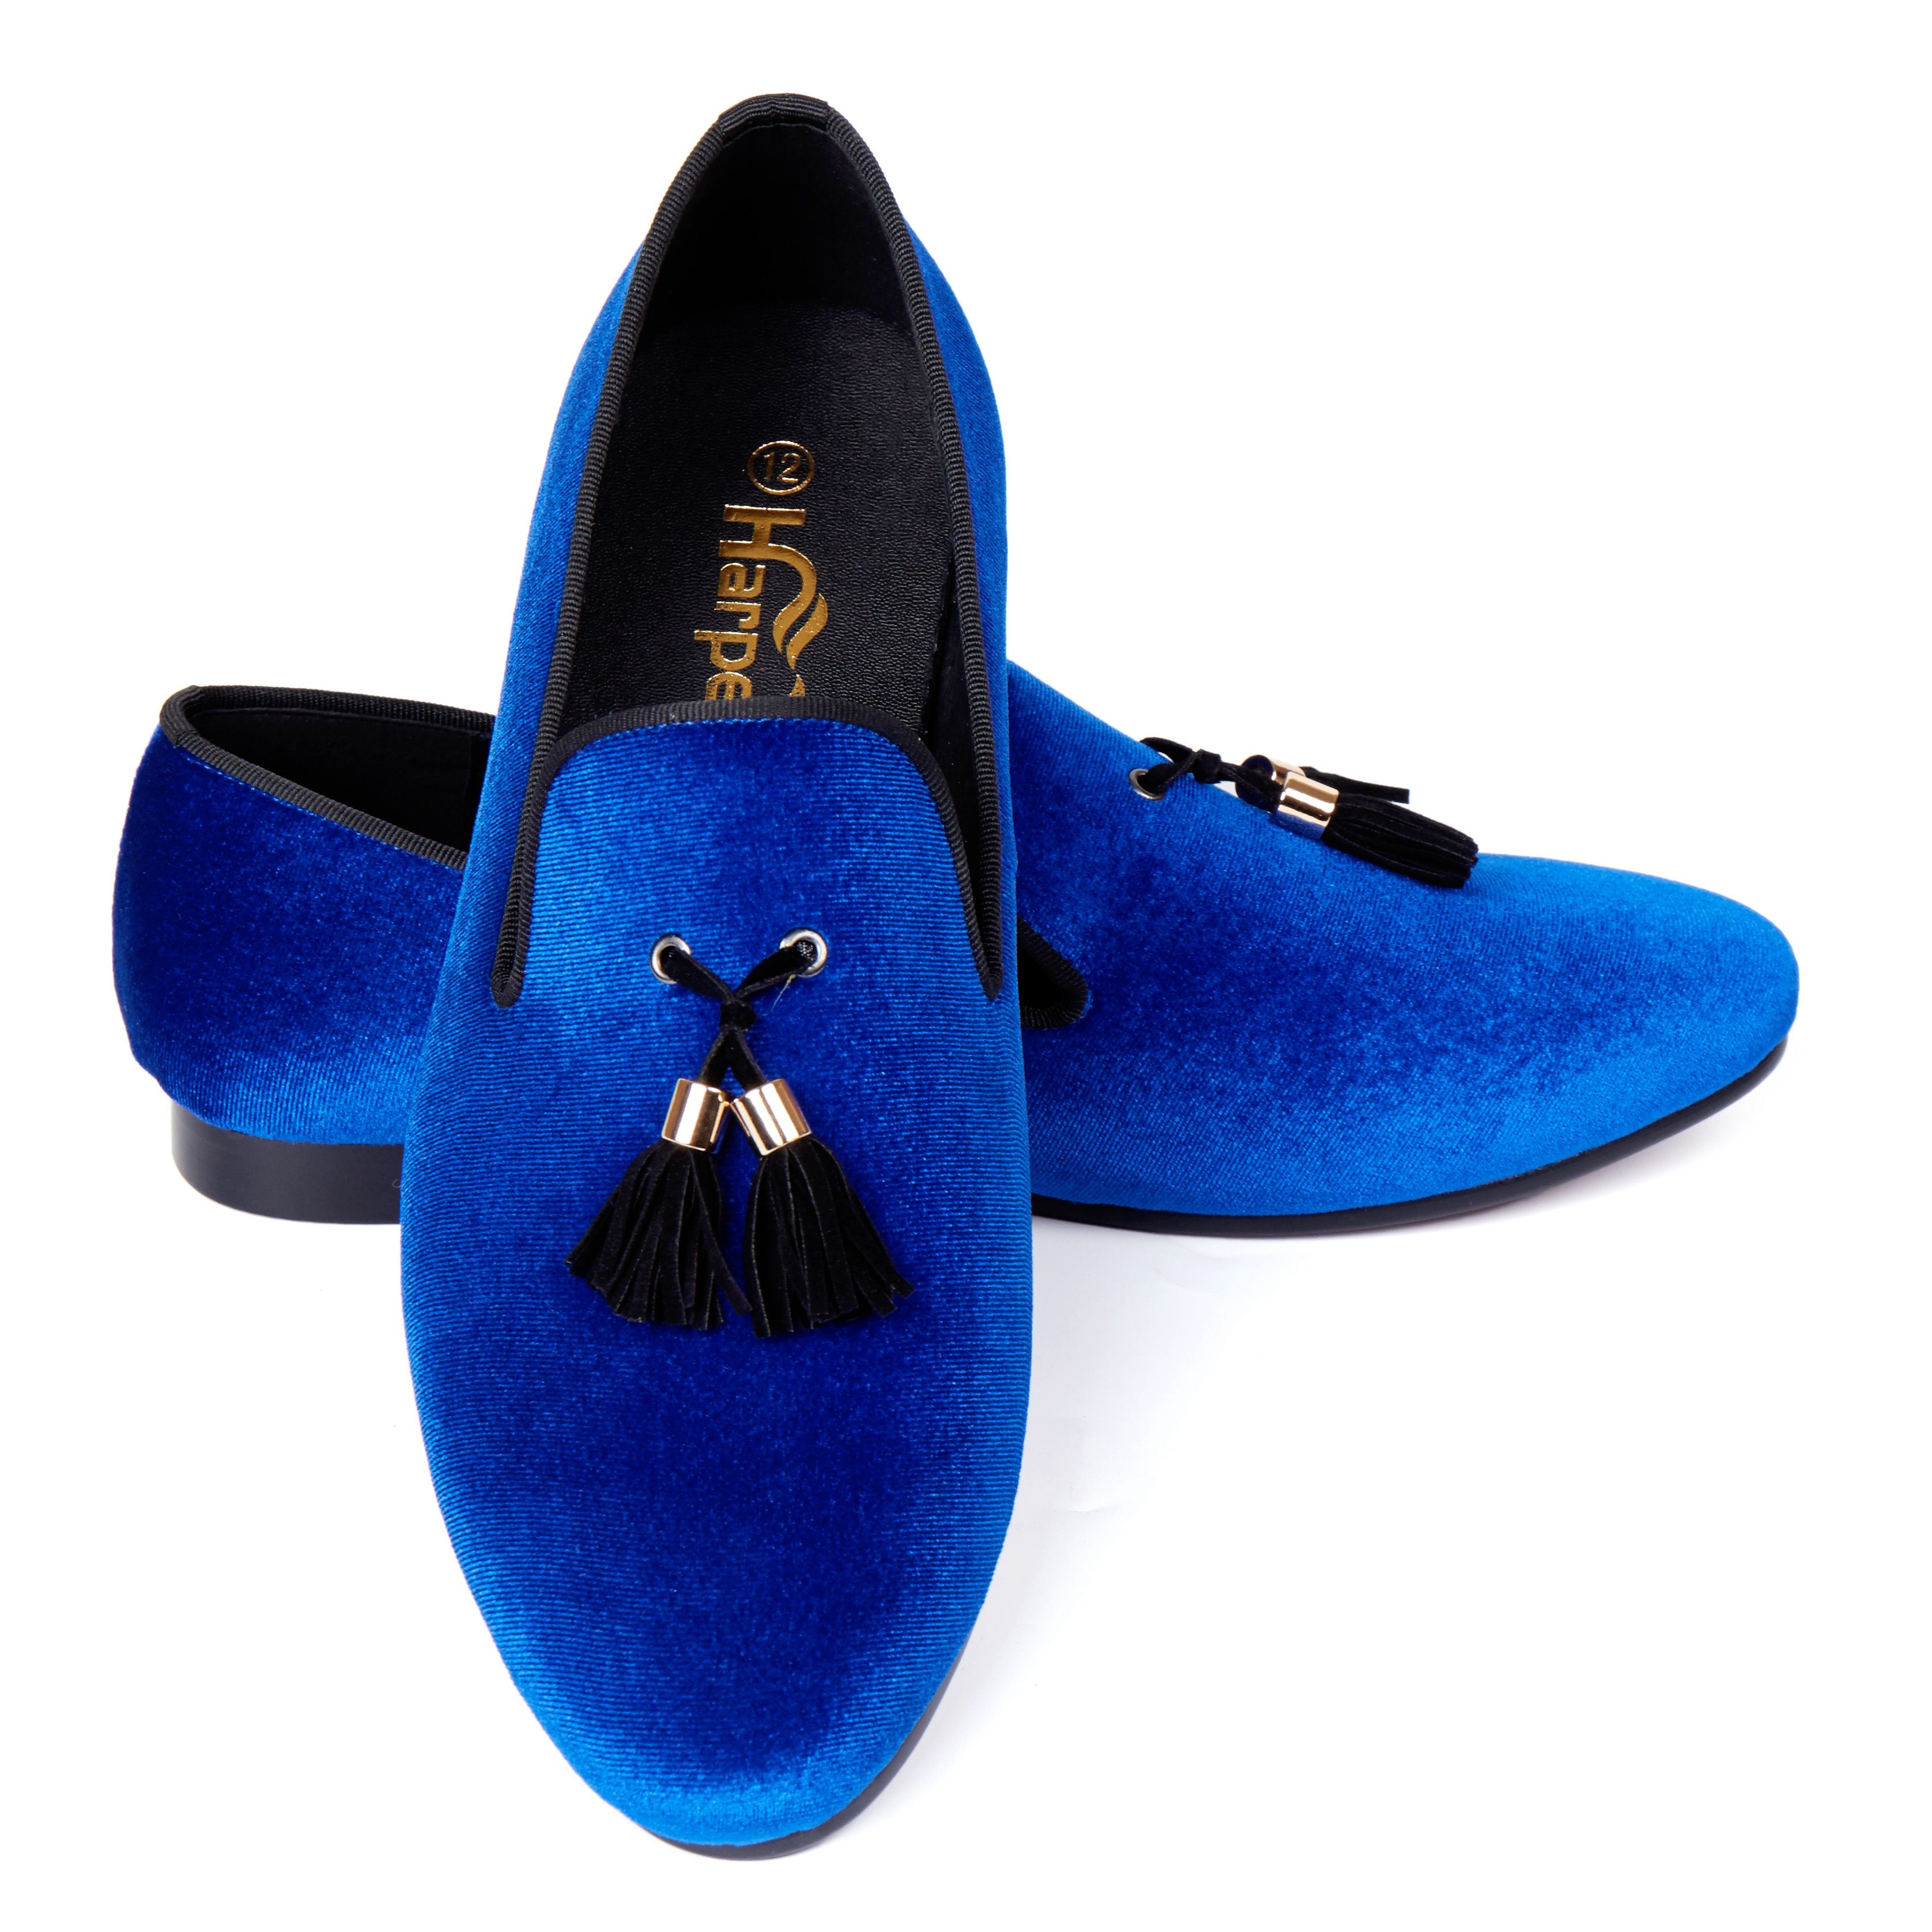 velvet blue shoes